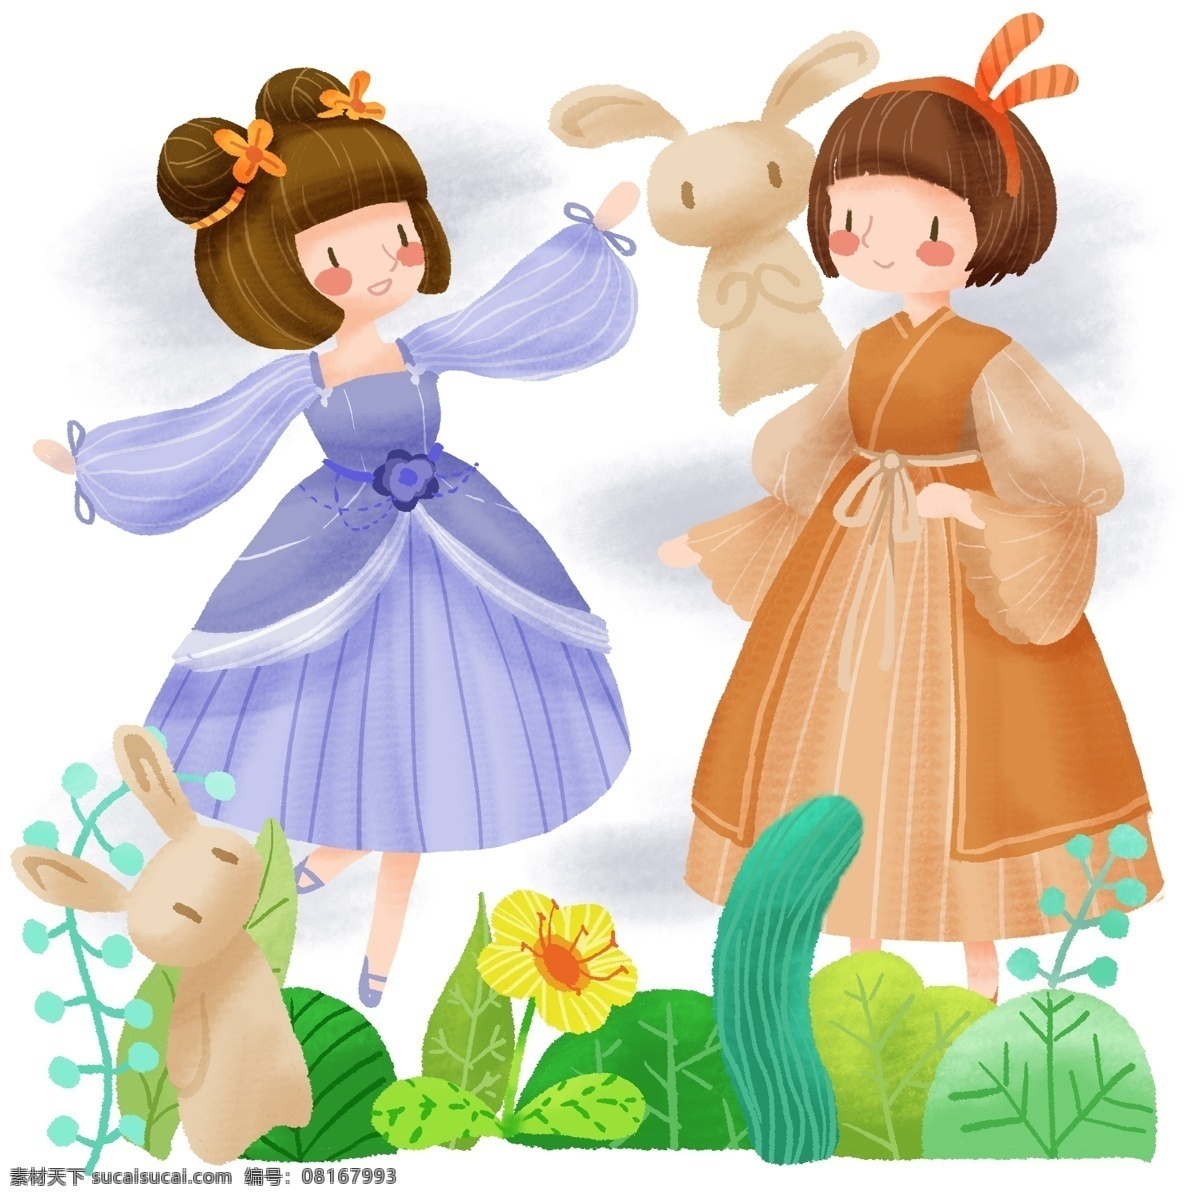 手绘 可爱 女孩 双子 森林 舞蹈 卡通 小女孩 绿色 植物 绿植 花朵 兔子 冬菇 蓝裙子 黄裙子 野外 春游 郊游